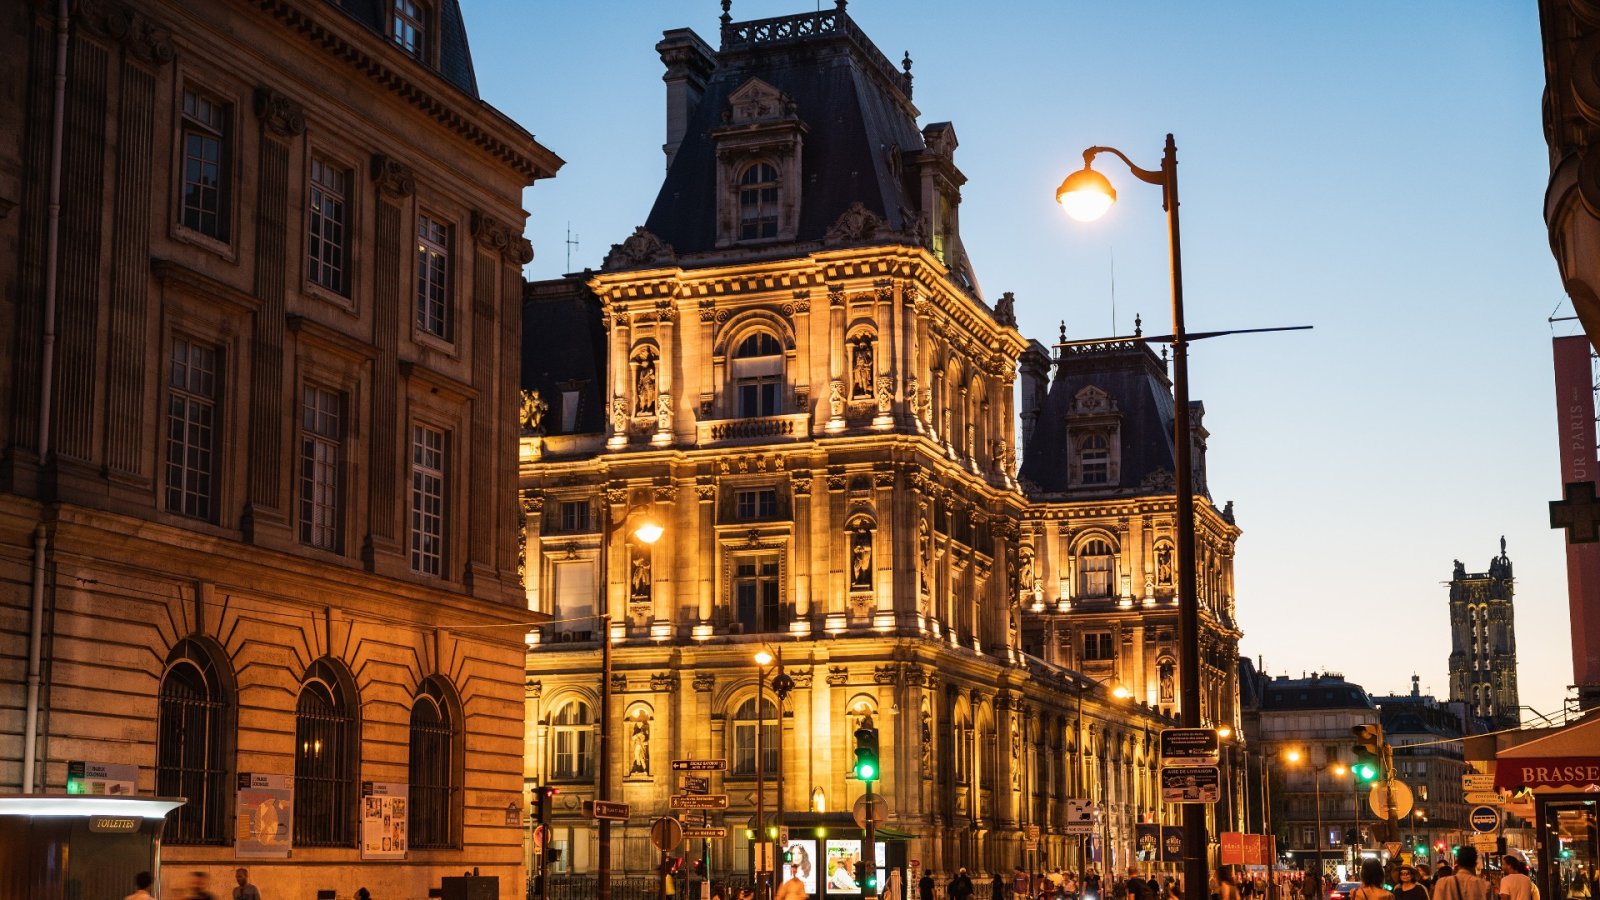 像文学偶像一样生活：入住詹姆斯乔伊斯完成其杰作的巴黎酒店